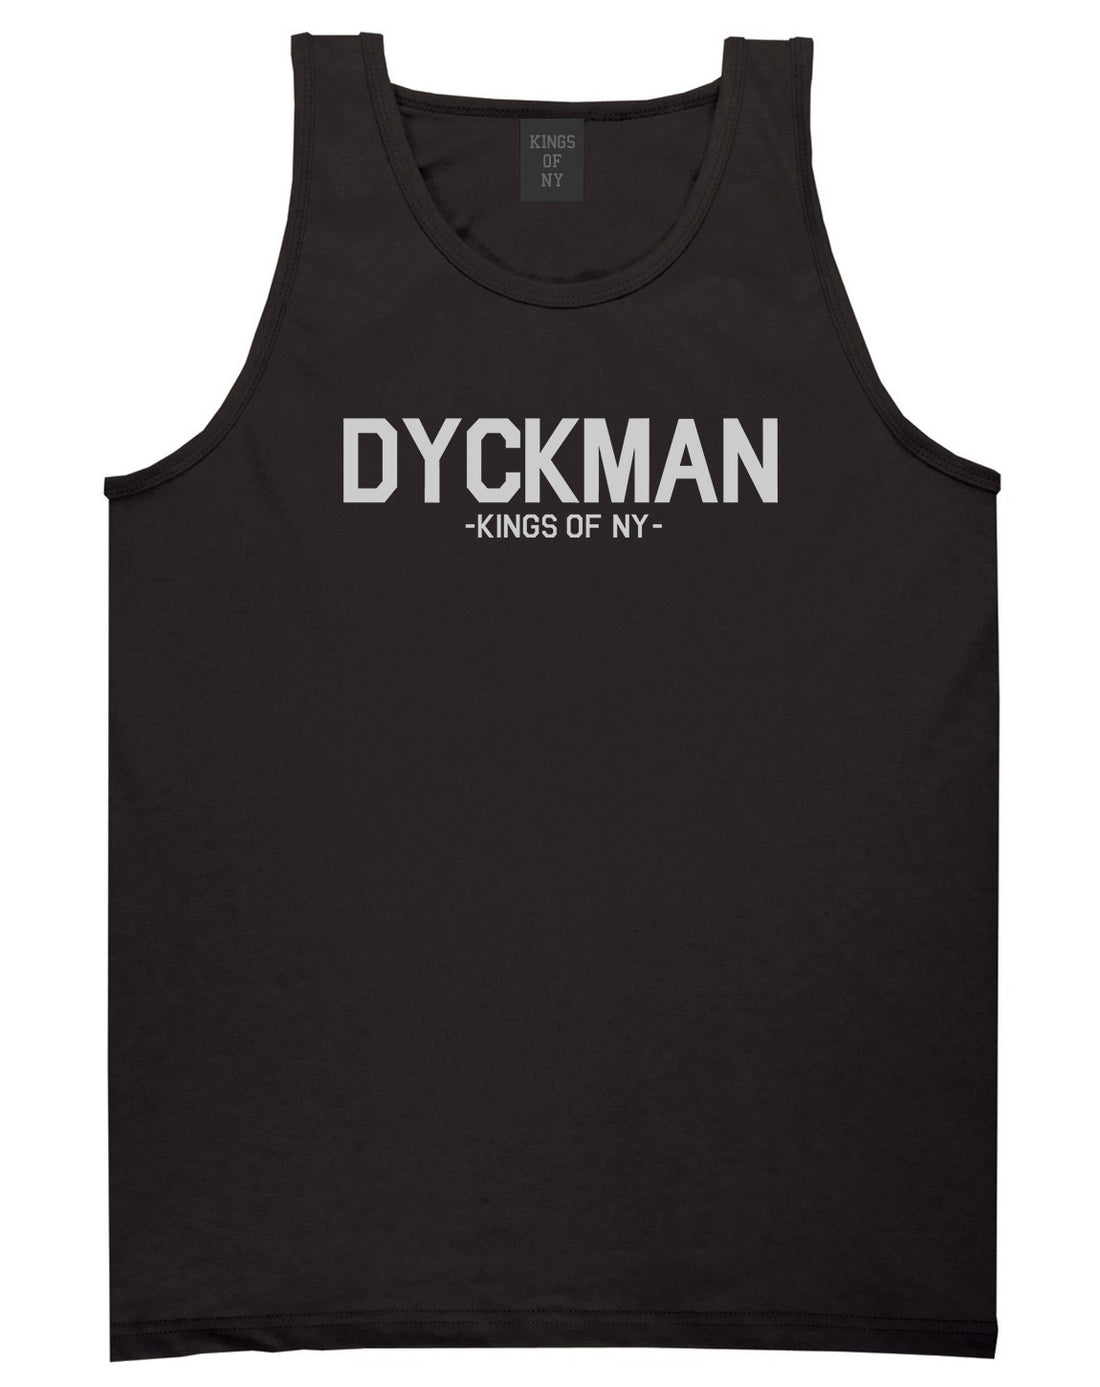 Dyckman Kings Of NY Mens Tank Top Shirt Black